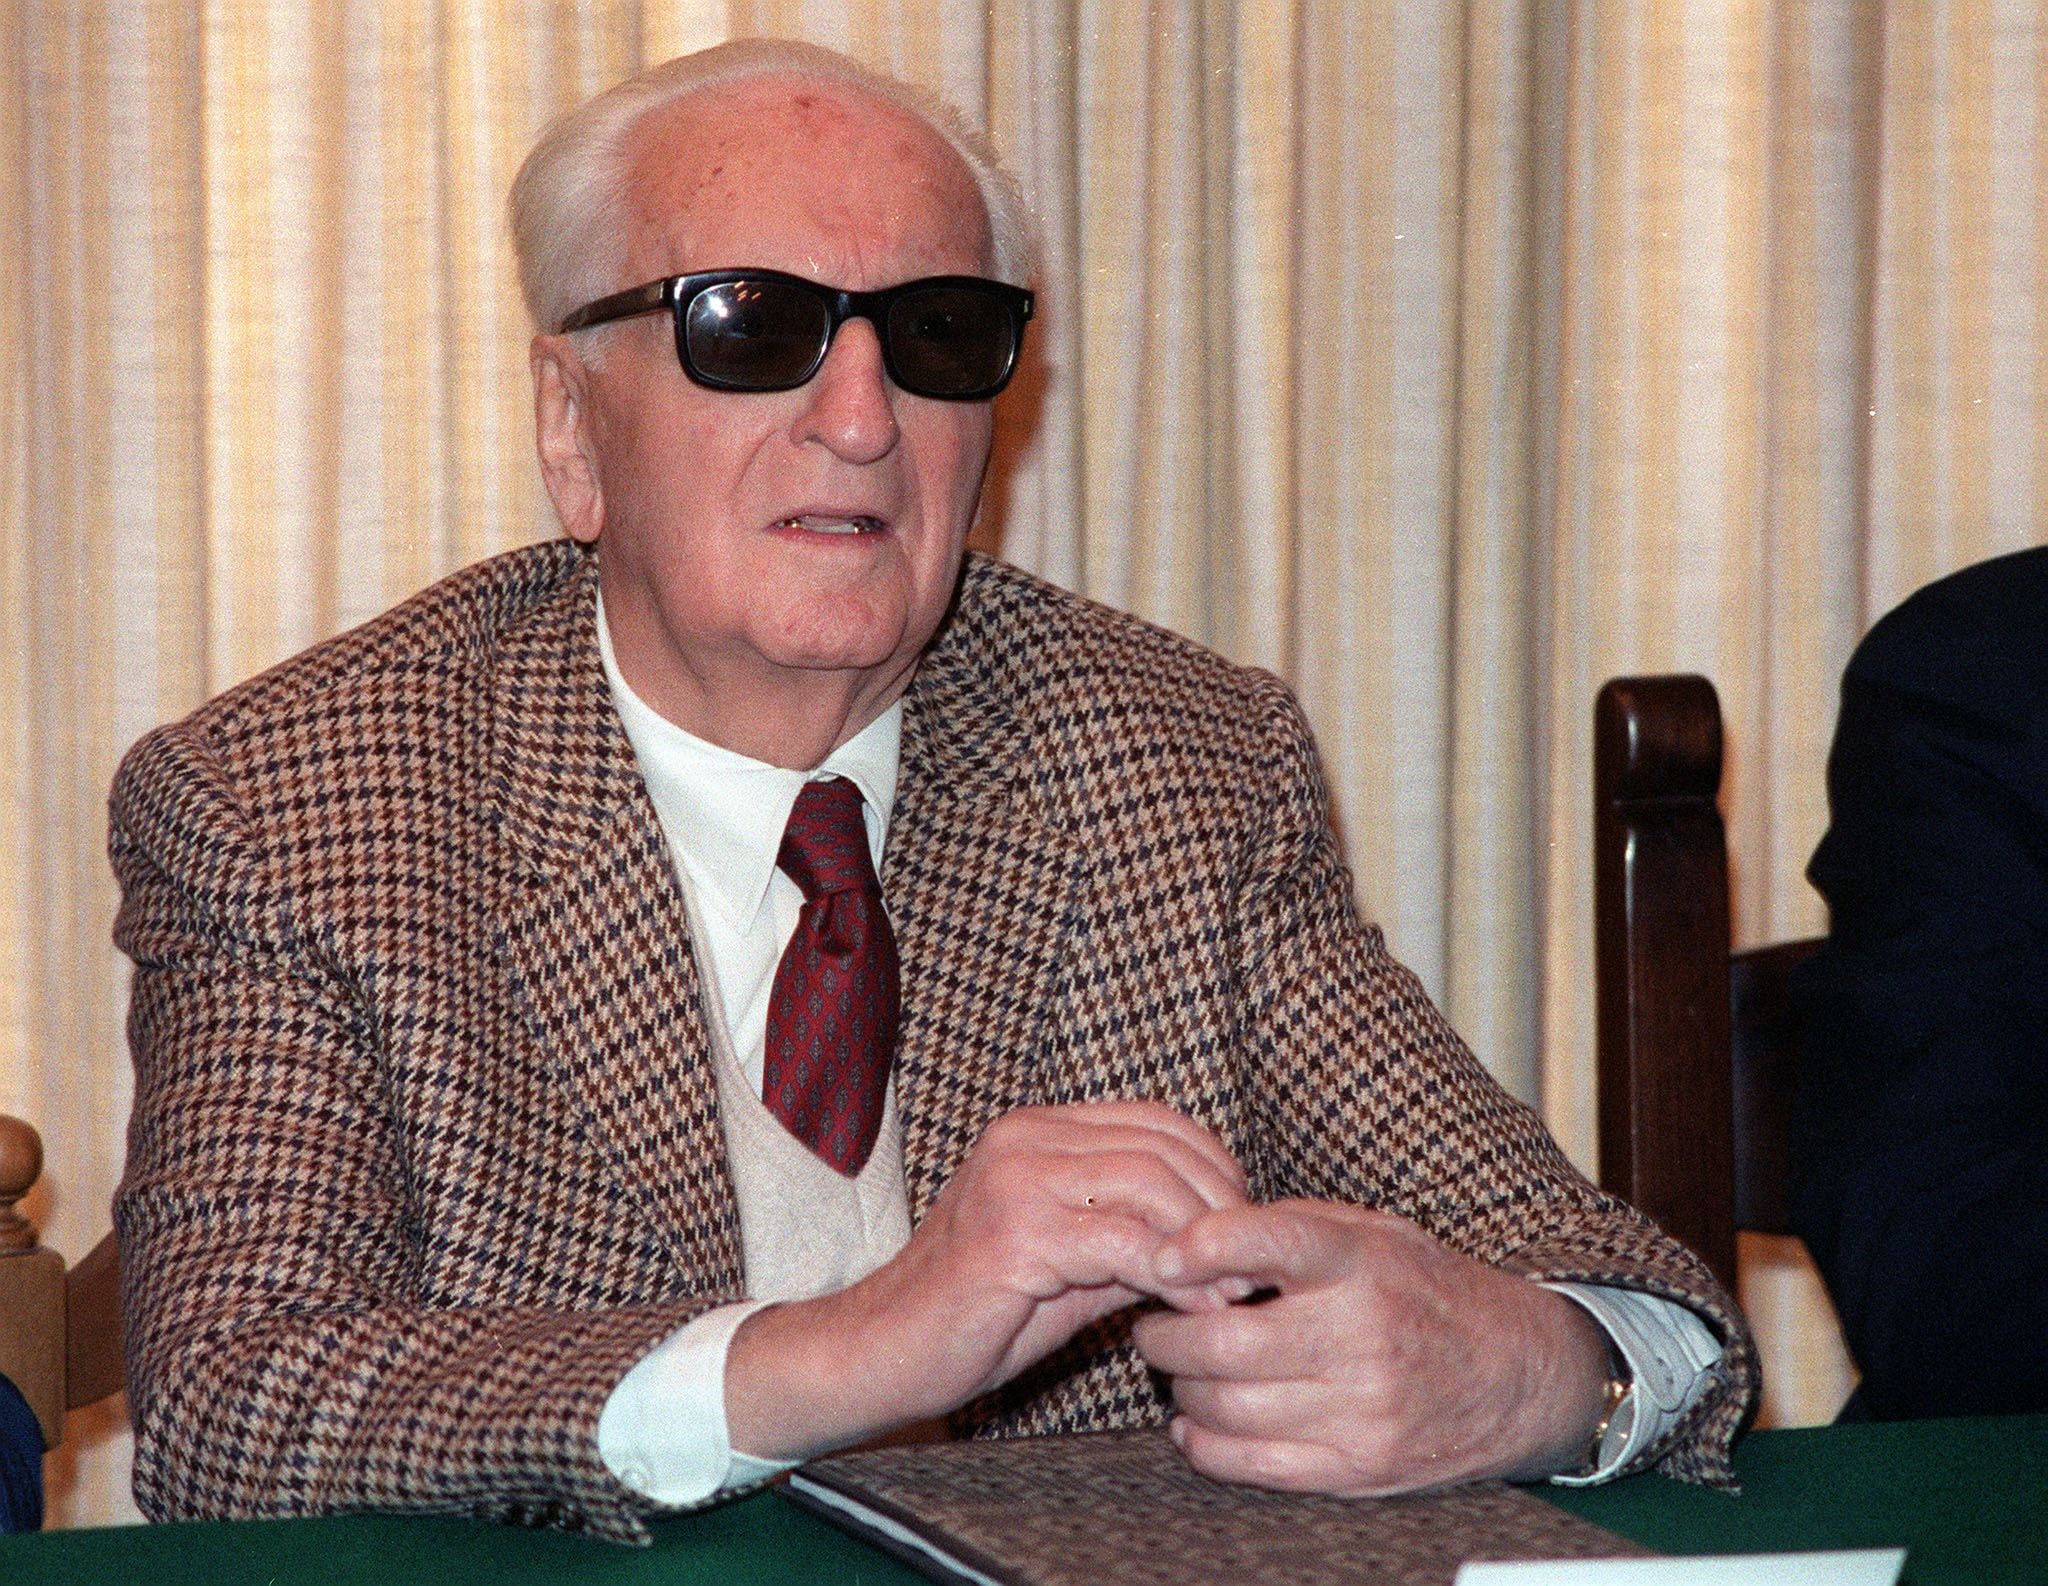 Un ritratto del 17 marzo 1987 a Maranello durante una conferenza stampa. Enzo Ferrari muore il 14 agosto 1988